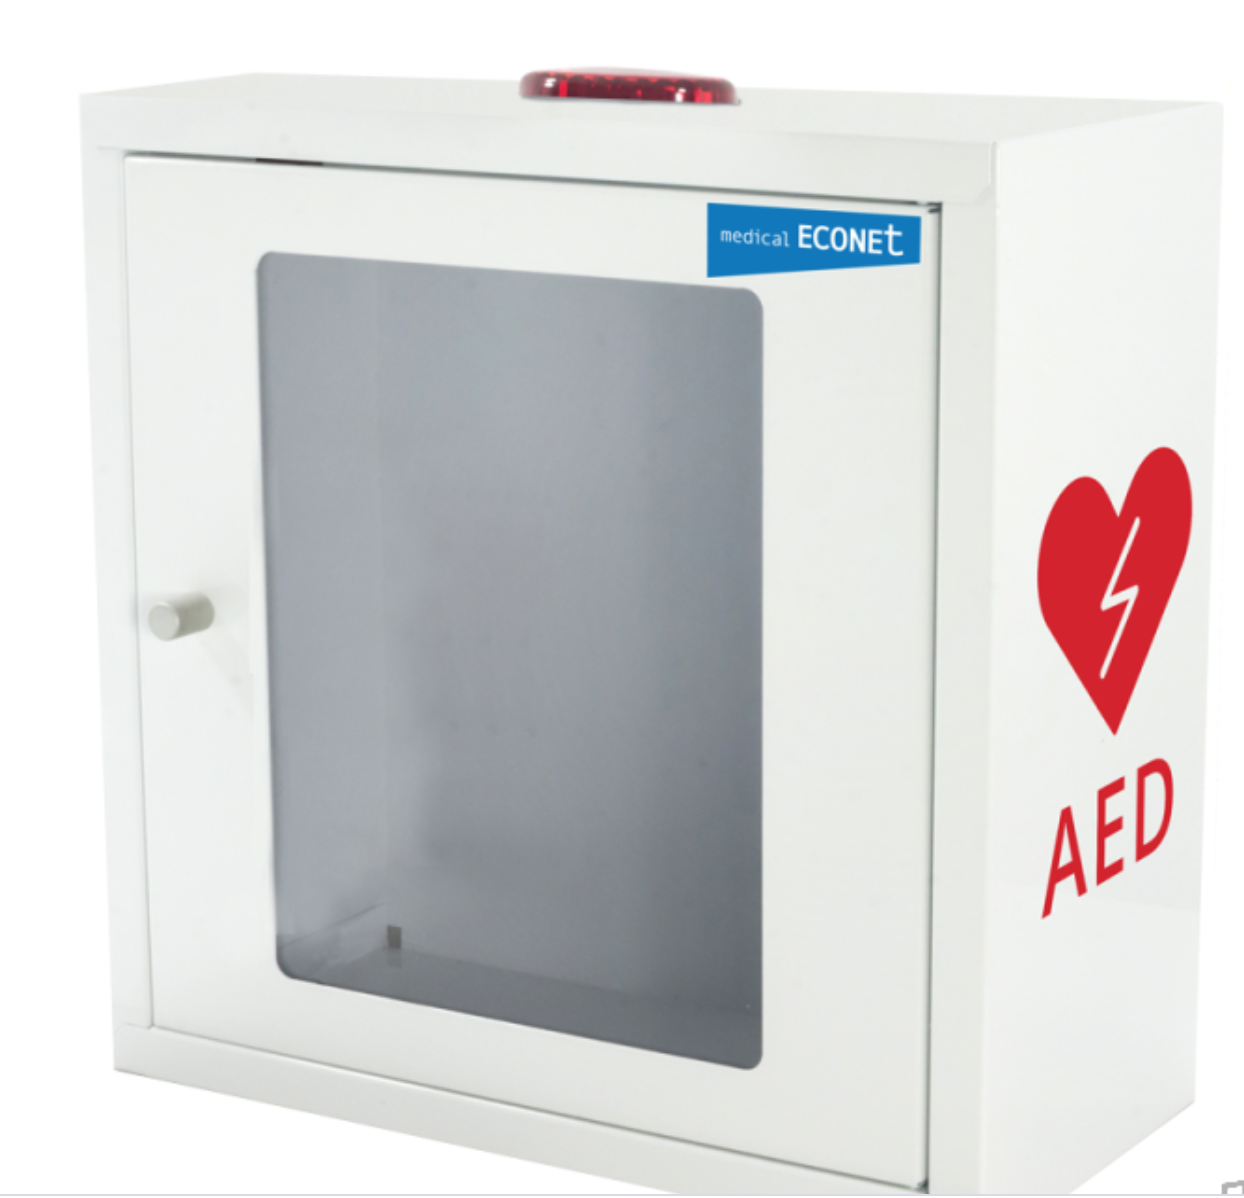 Wandkasten für ECO AED / ME PAD mit Alarm